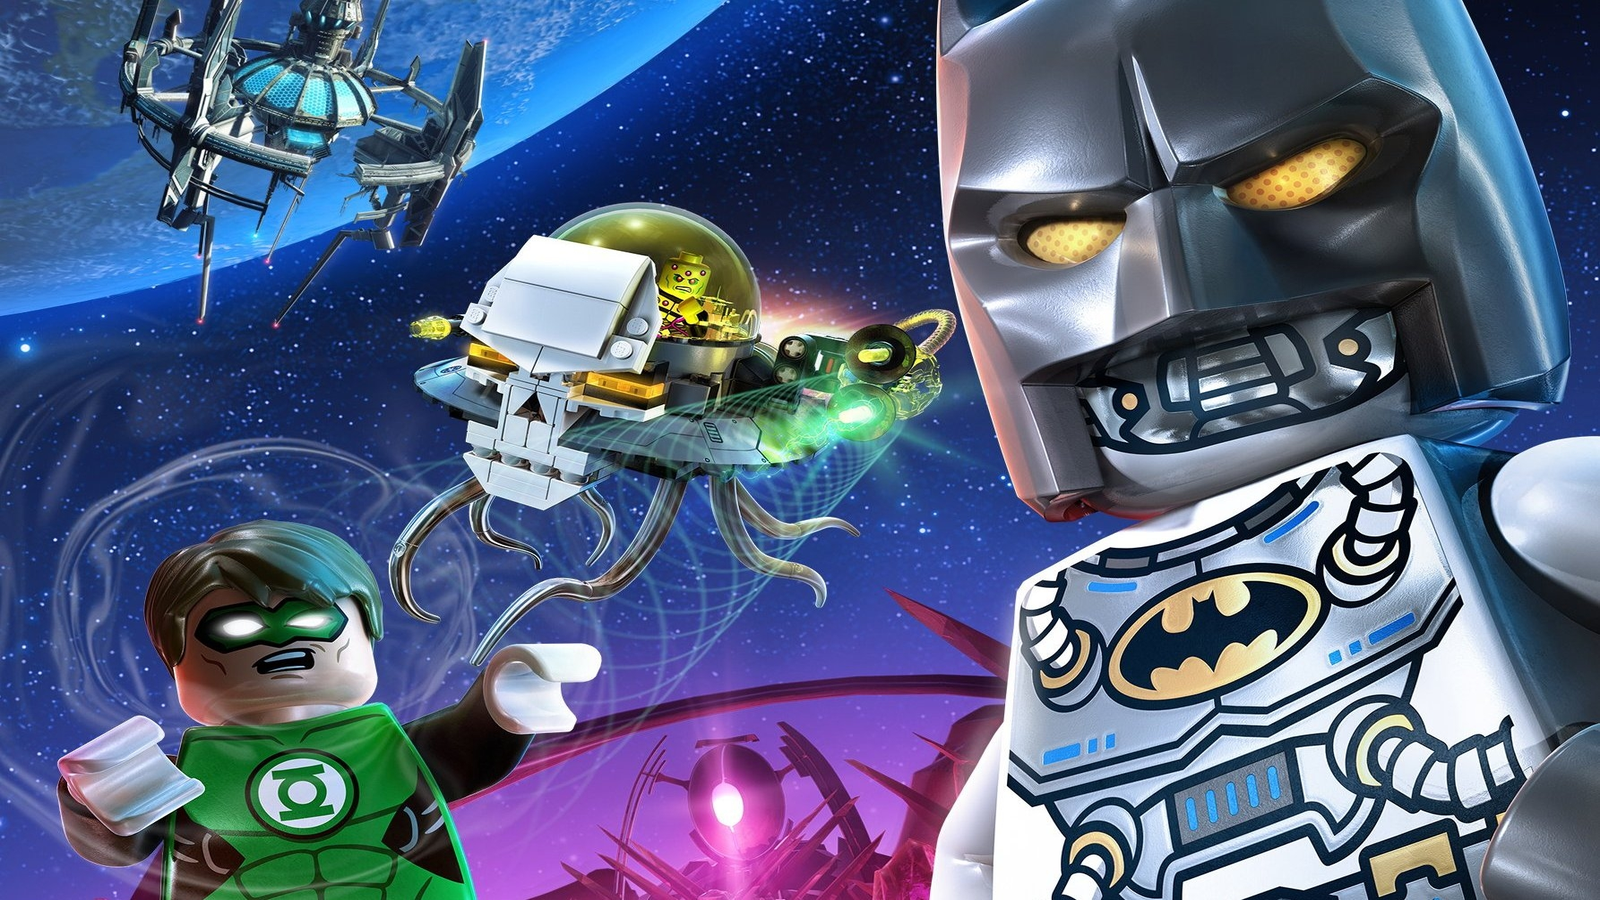 Lego Batman 1 - Bandas Desenhadas